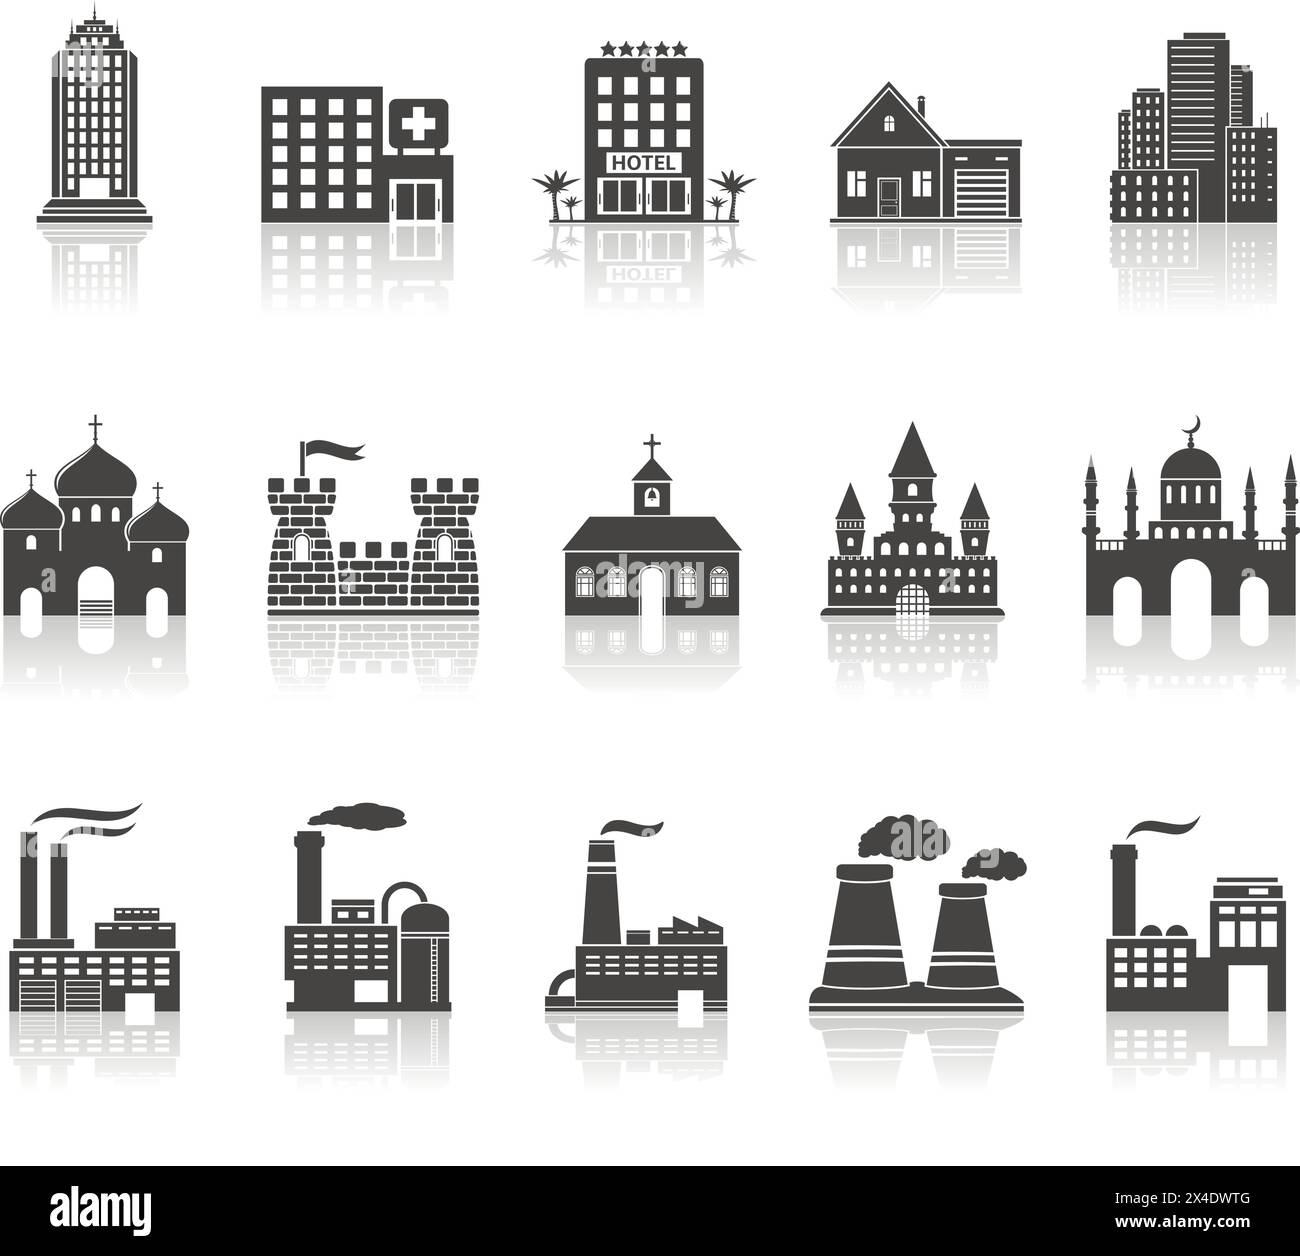 Ensemble de divers bâtiments, usines et maisons icônes avec réflexion. Illustration vectorielle. Illustration de Vecteur